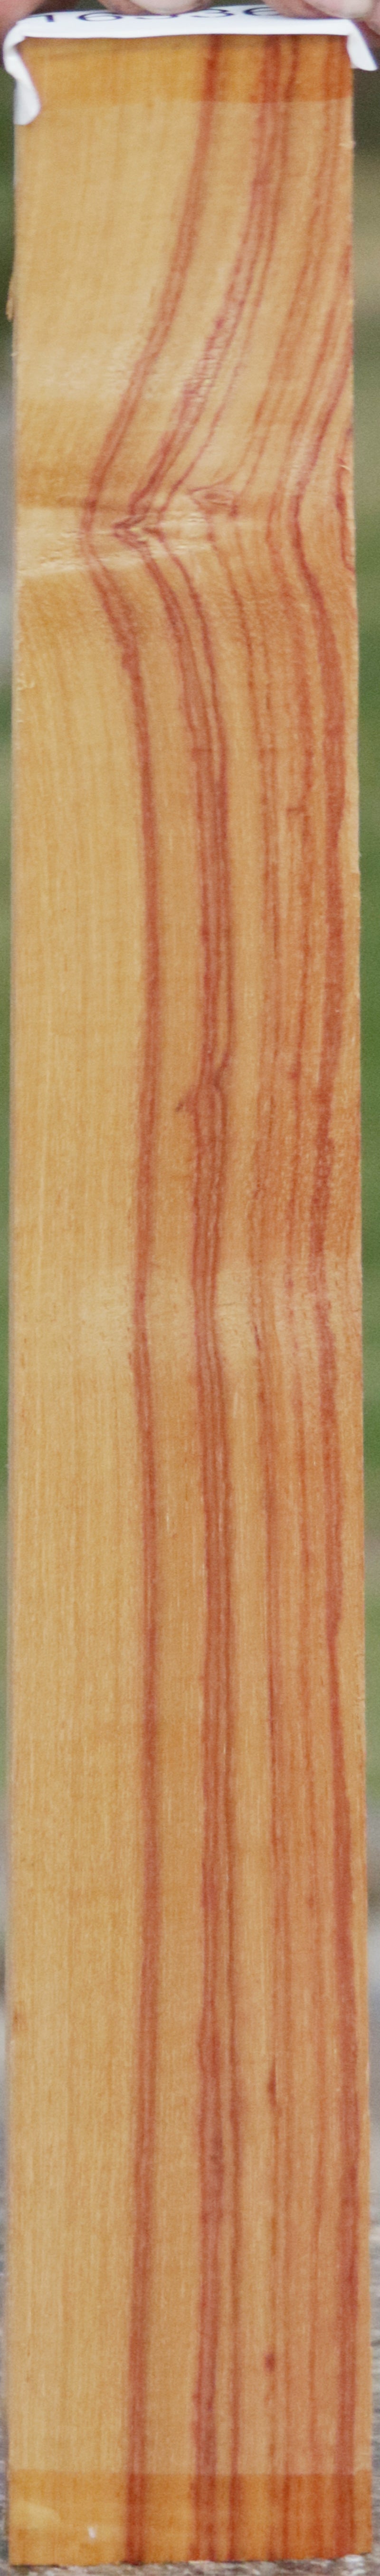 Tulipwood Lumber